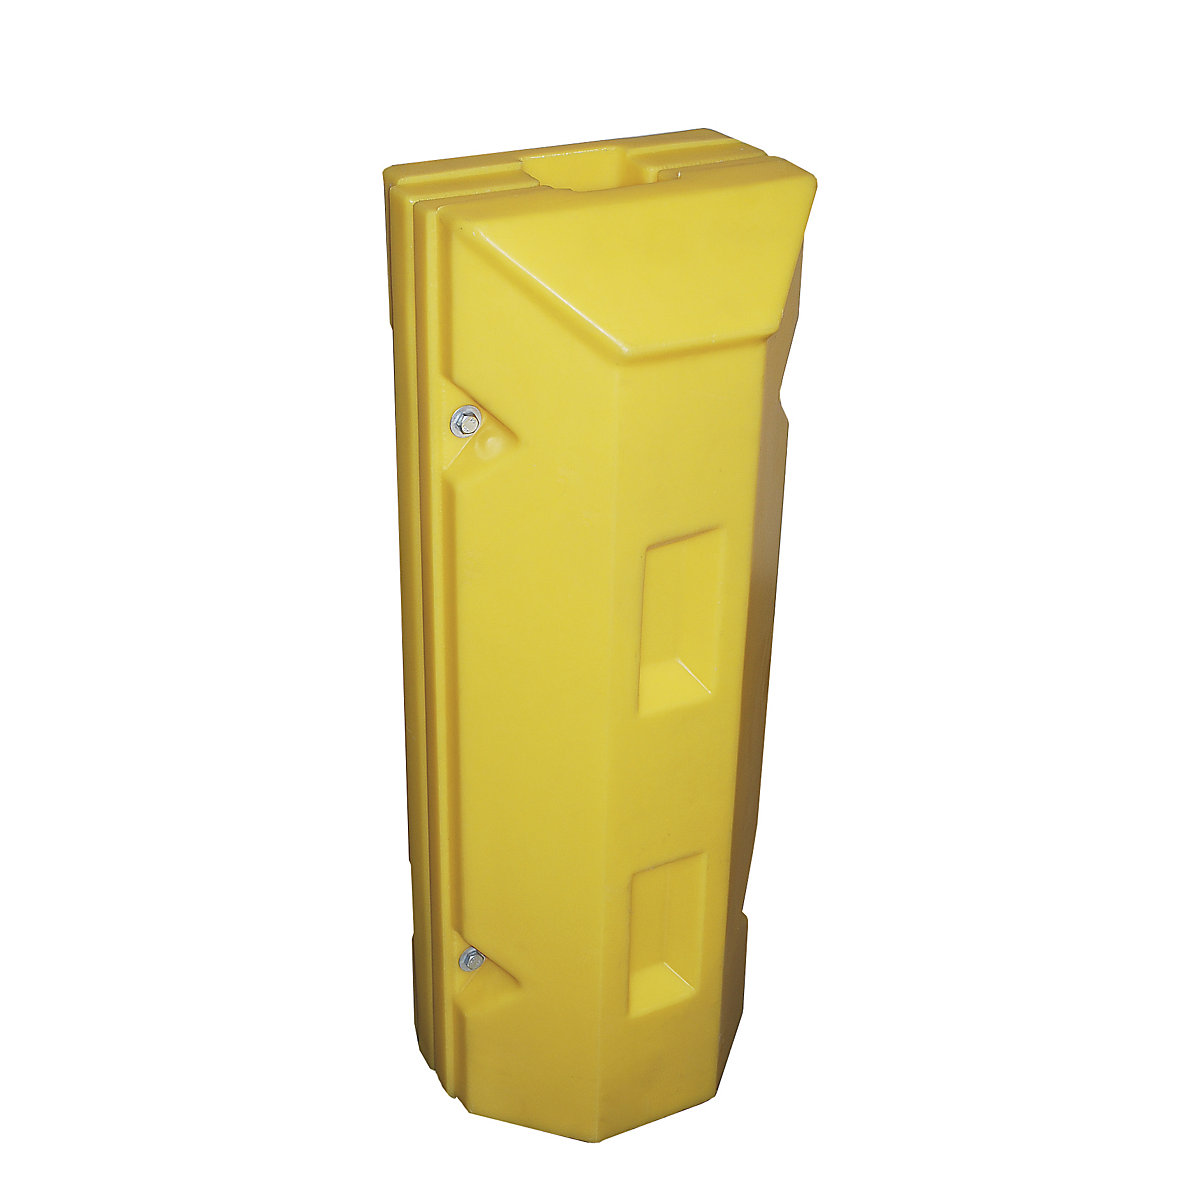 Säulen- und Pfostenschutz, aus Polyethylen, gelb, LxBxH 360 x 350 x 945 mm, Innenmaß 100 x 100 mm